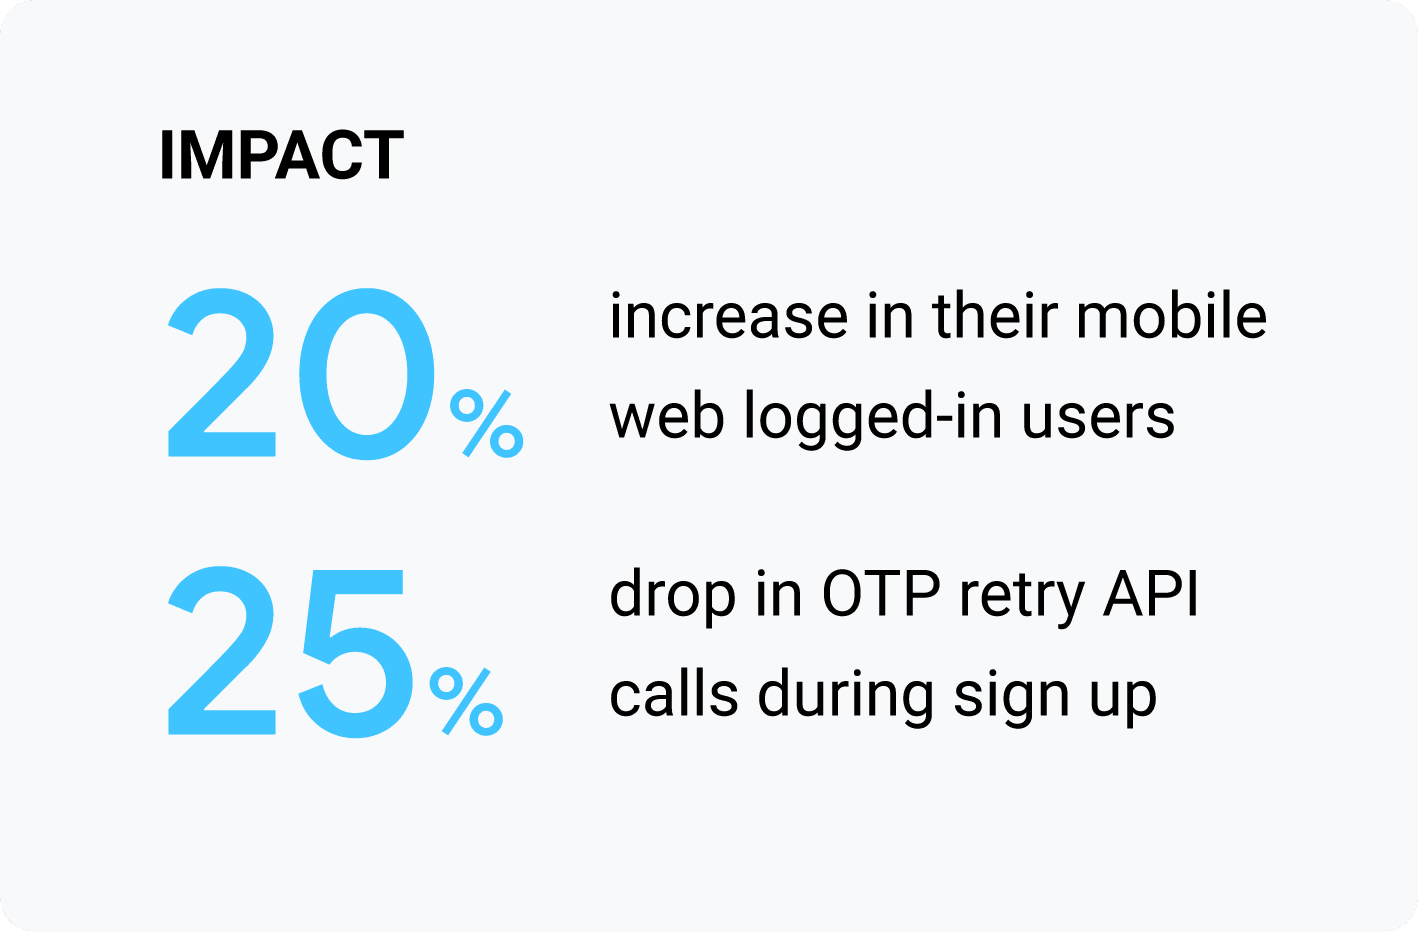 영향: 모바일 웹 로그인 사용자 20% 증가, 가입 중 OTP 재시도 API 호출 25% 감소